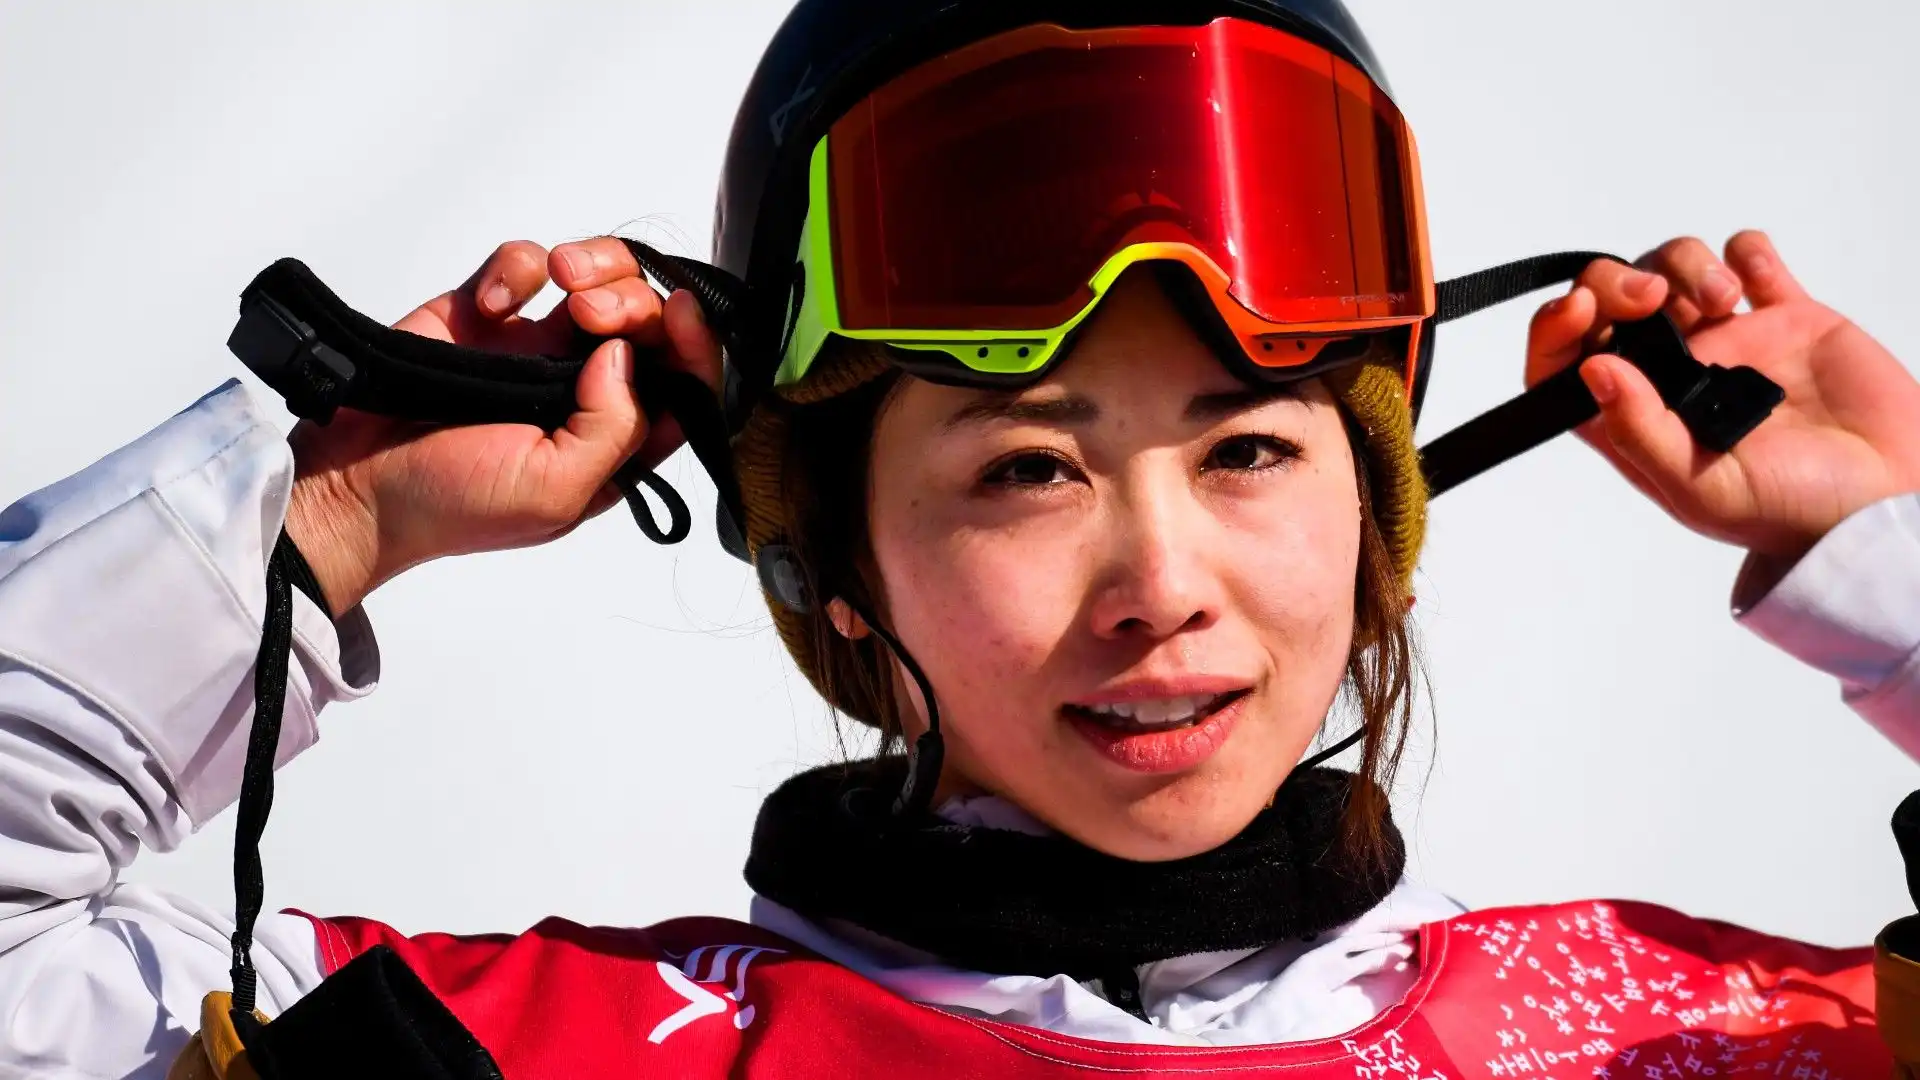 L'atleta è una giovane e talentuosa snowboarder giapponese